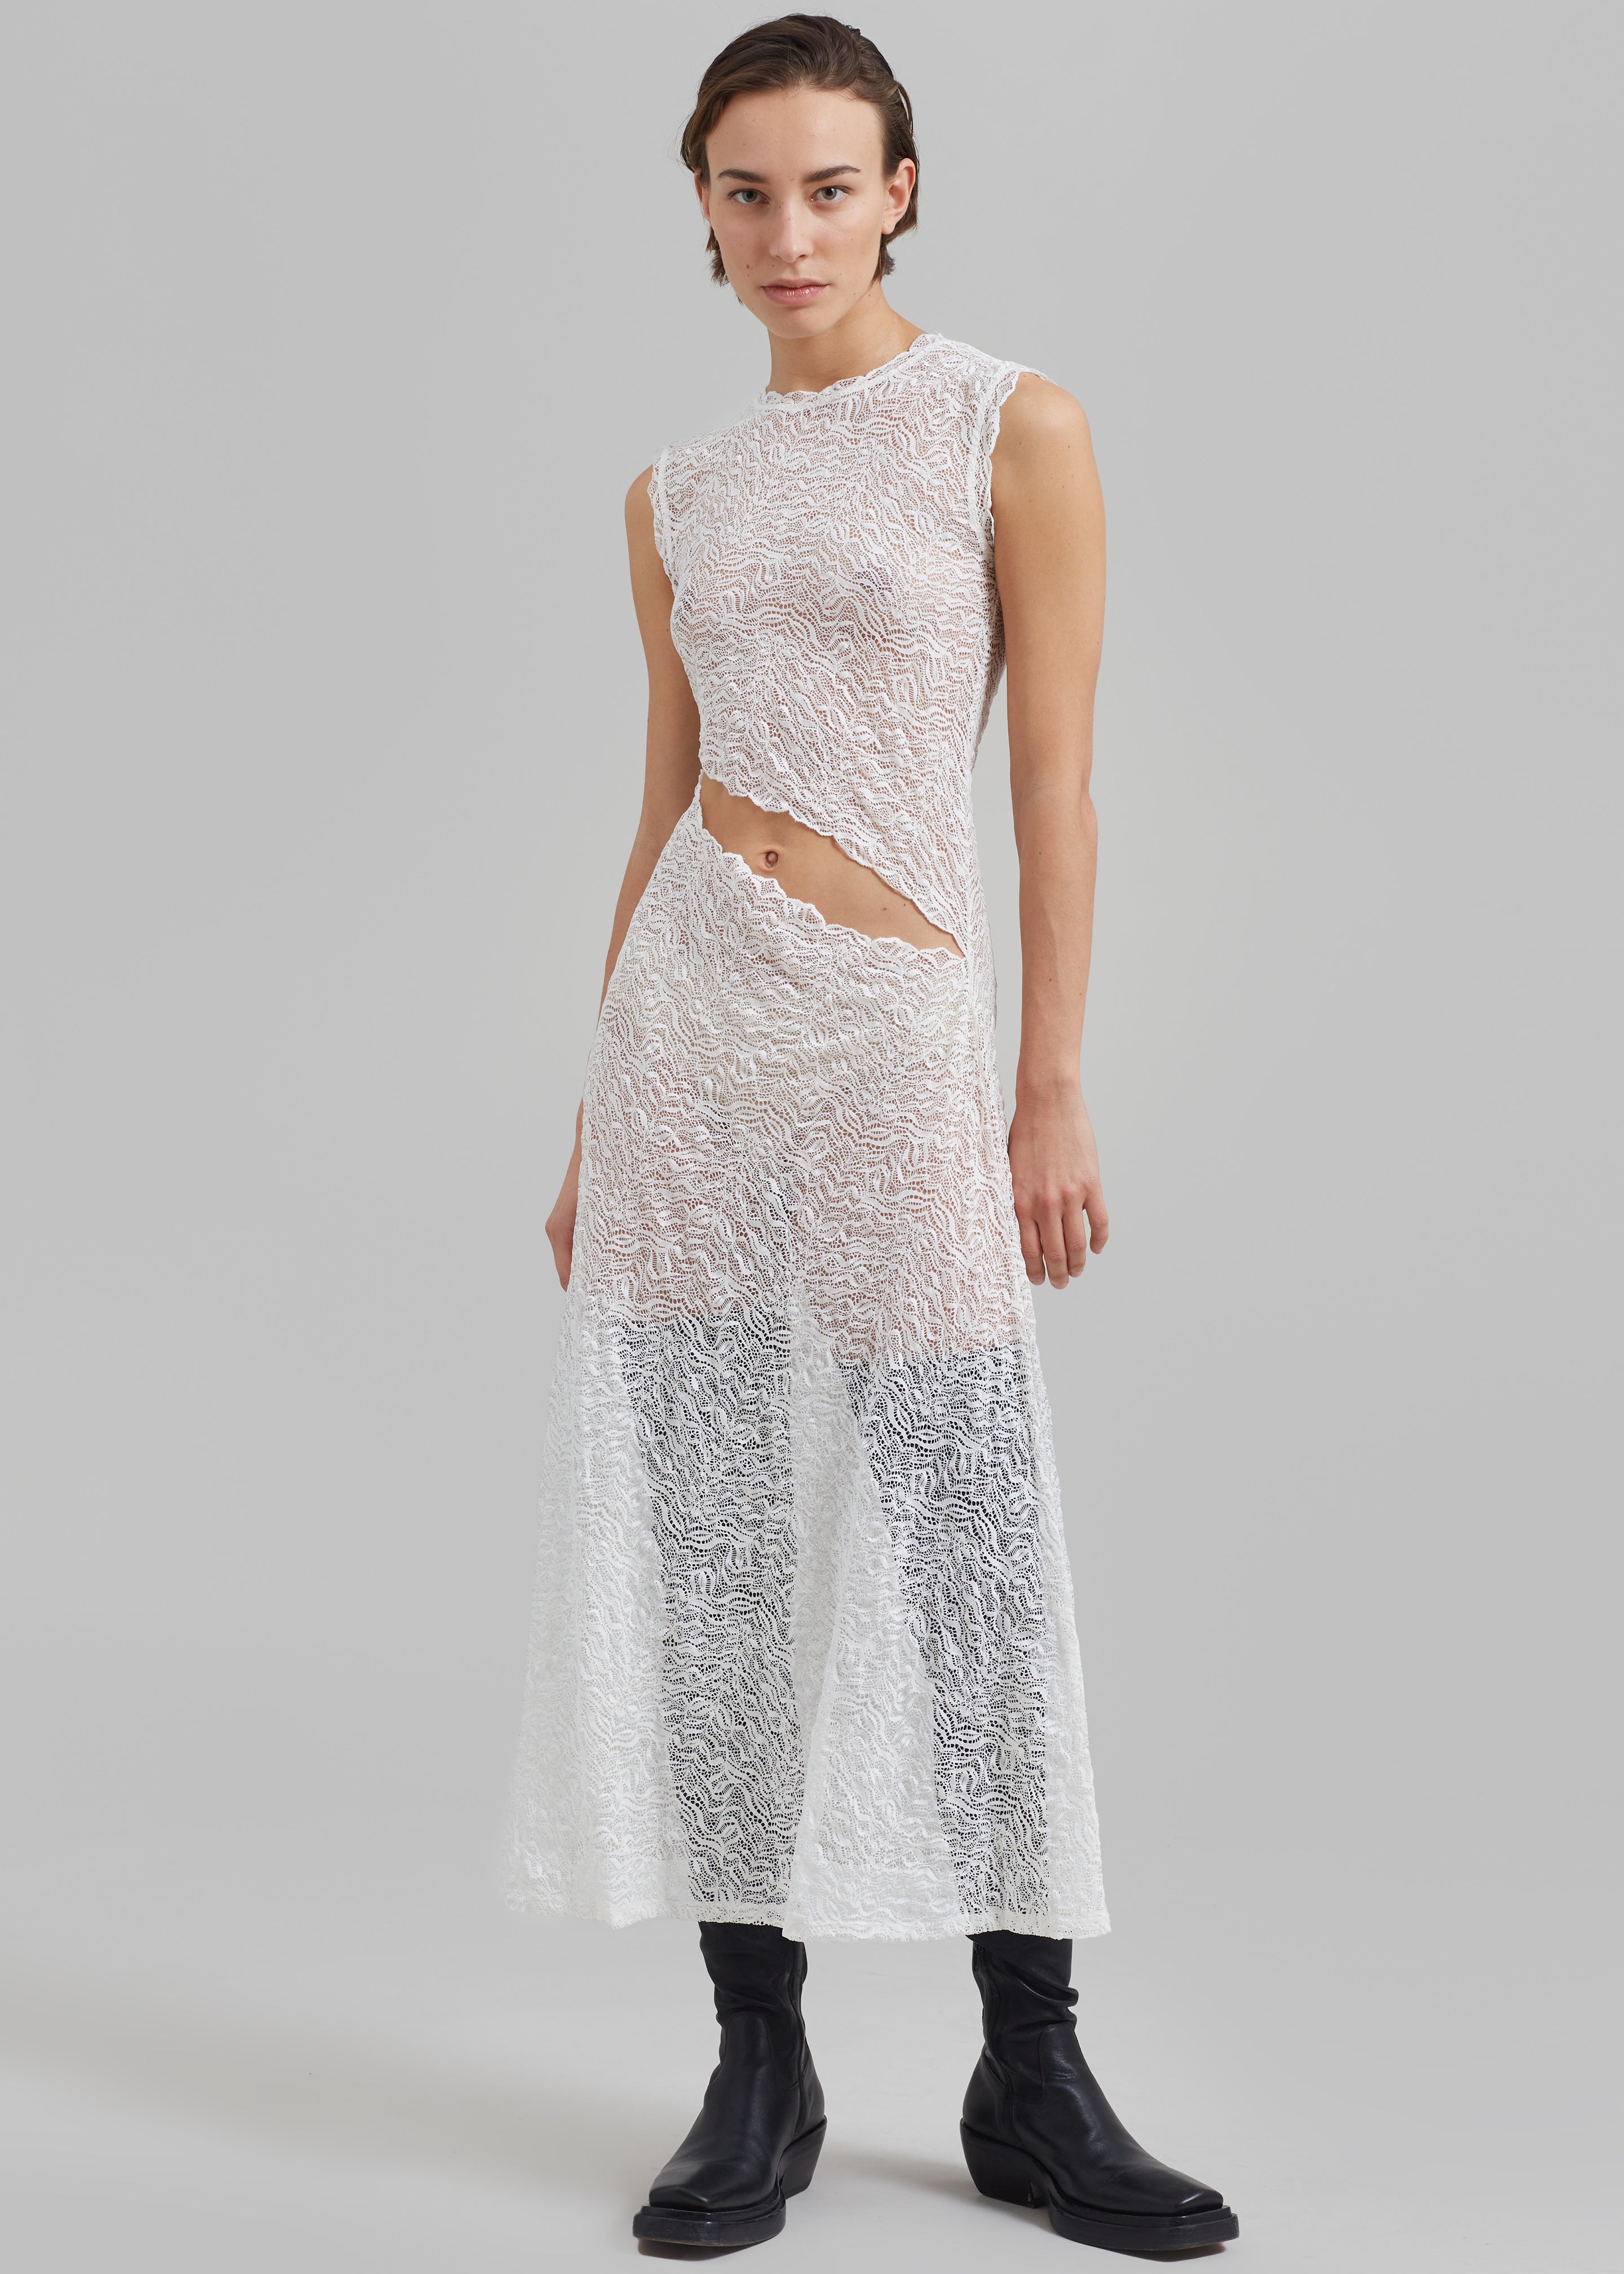 Beaufille Silva Dress - White - 3